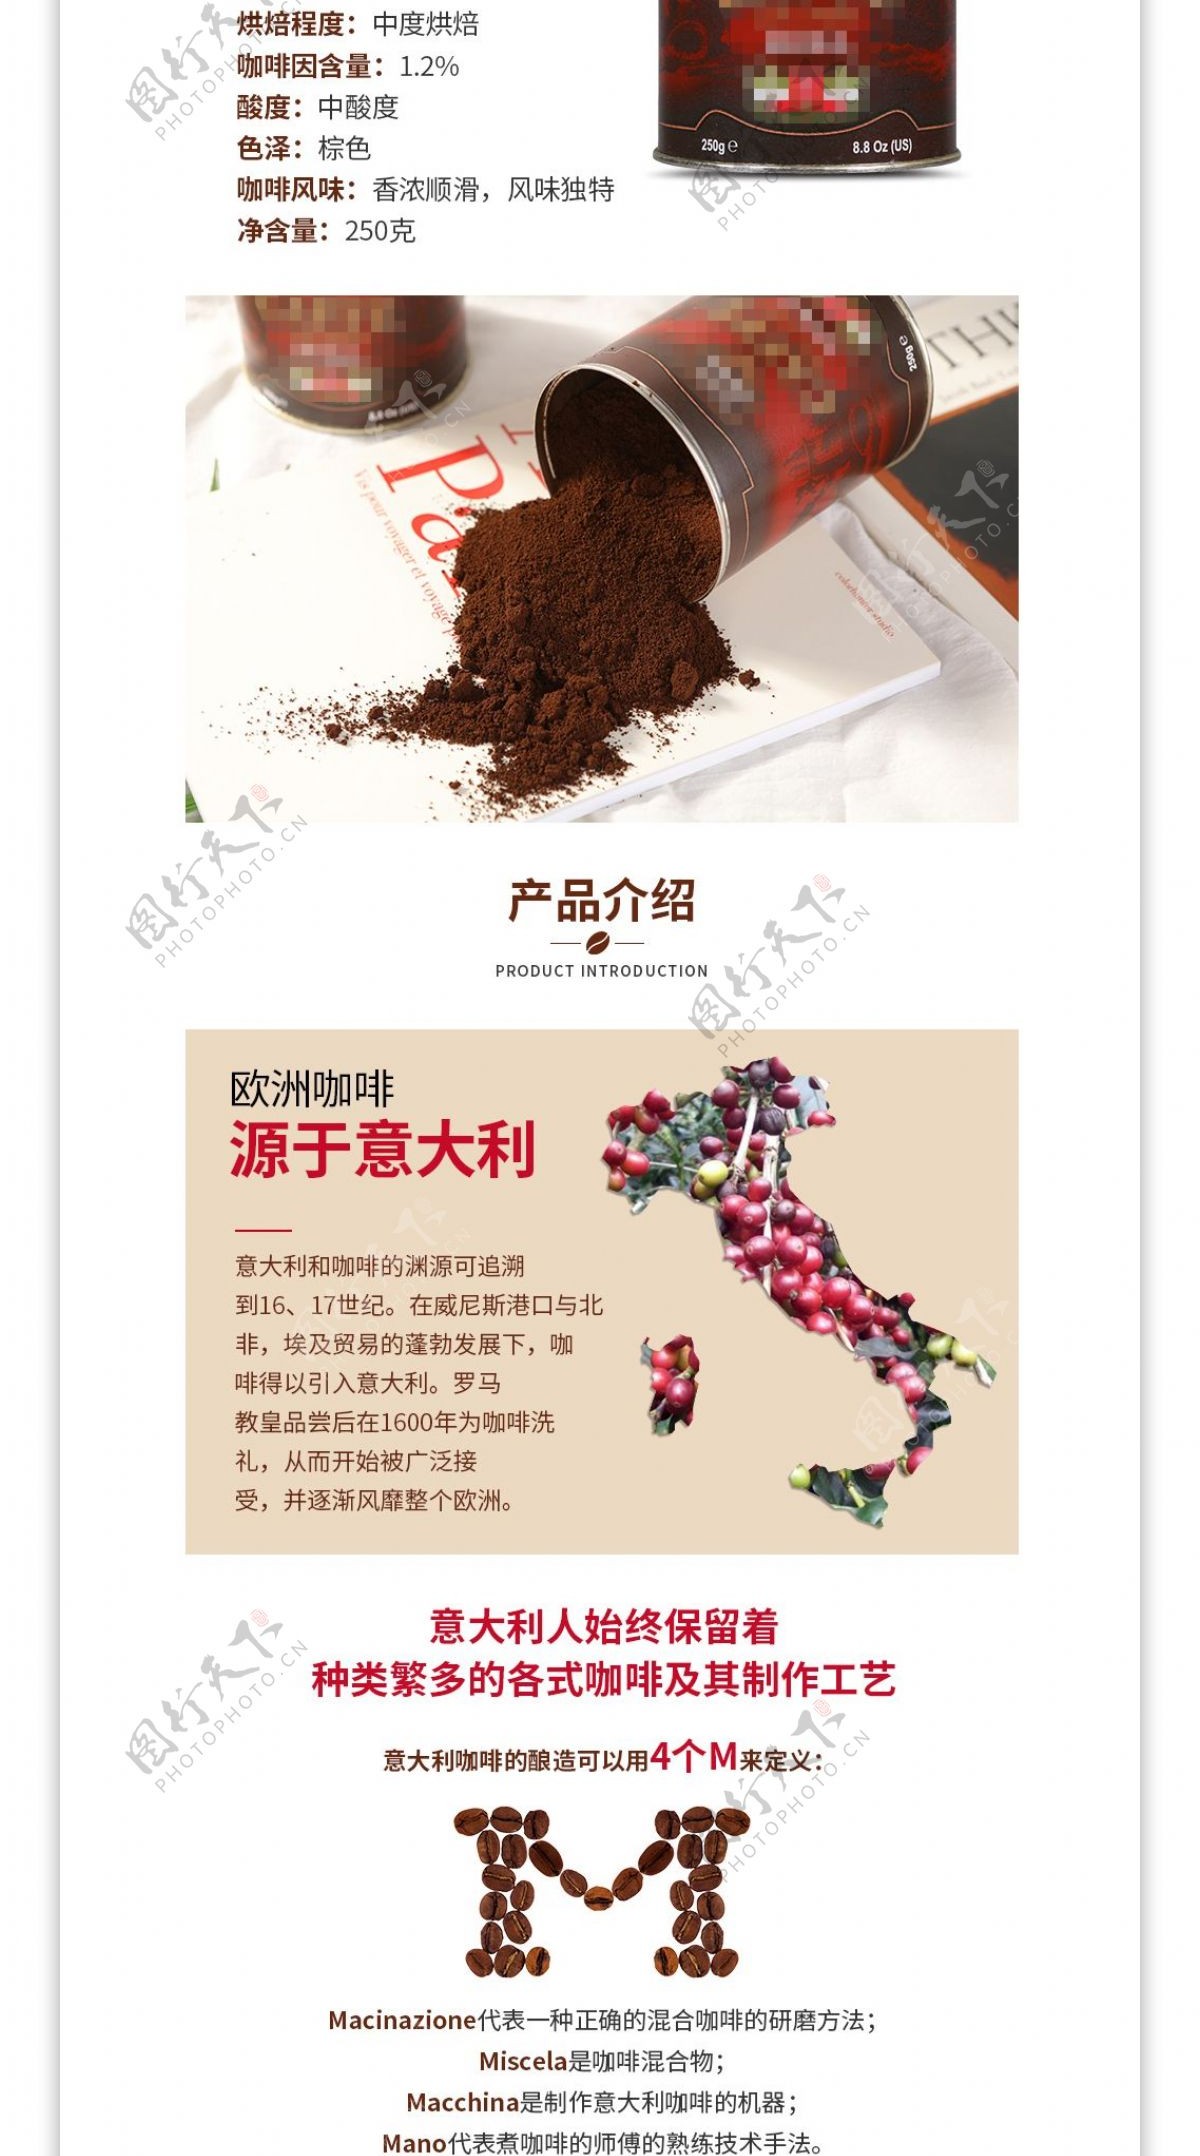 电商淘宝食品茶饮意大利进口咖啡详情页模板